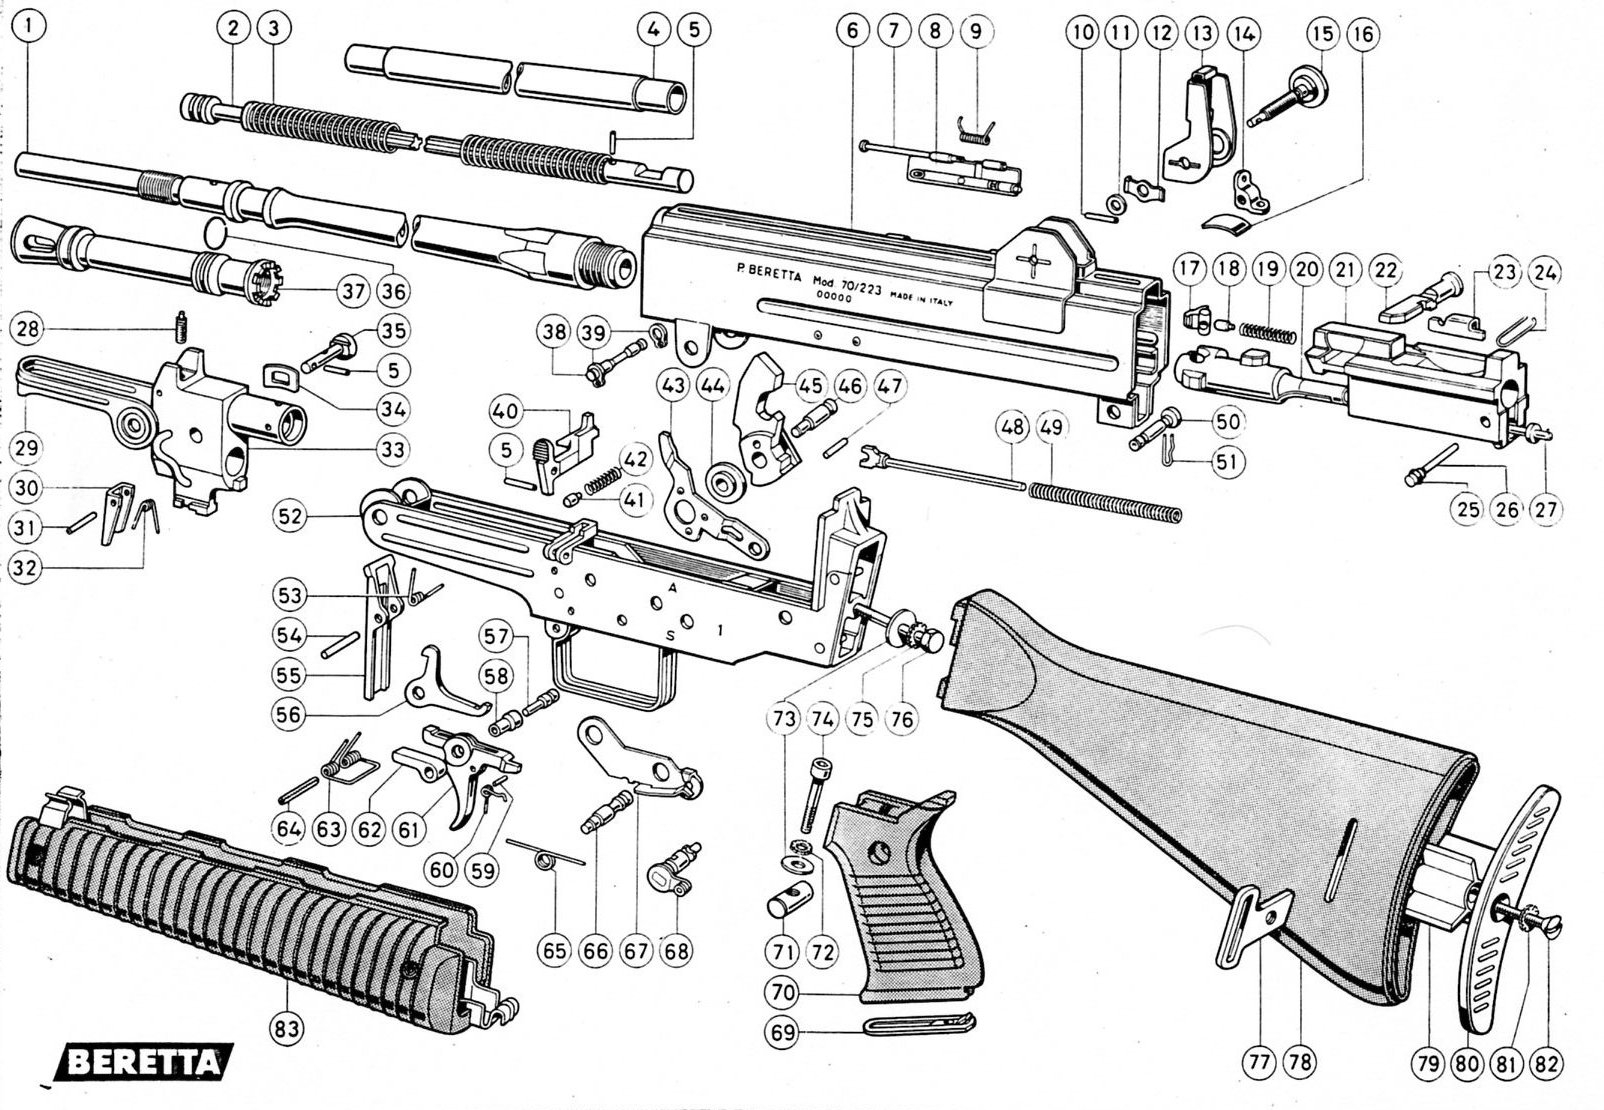 Ar 15 Parts Diagram Parts Parts List For Ar 15 Build